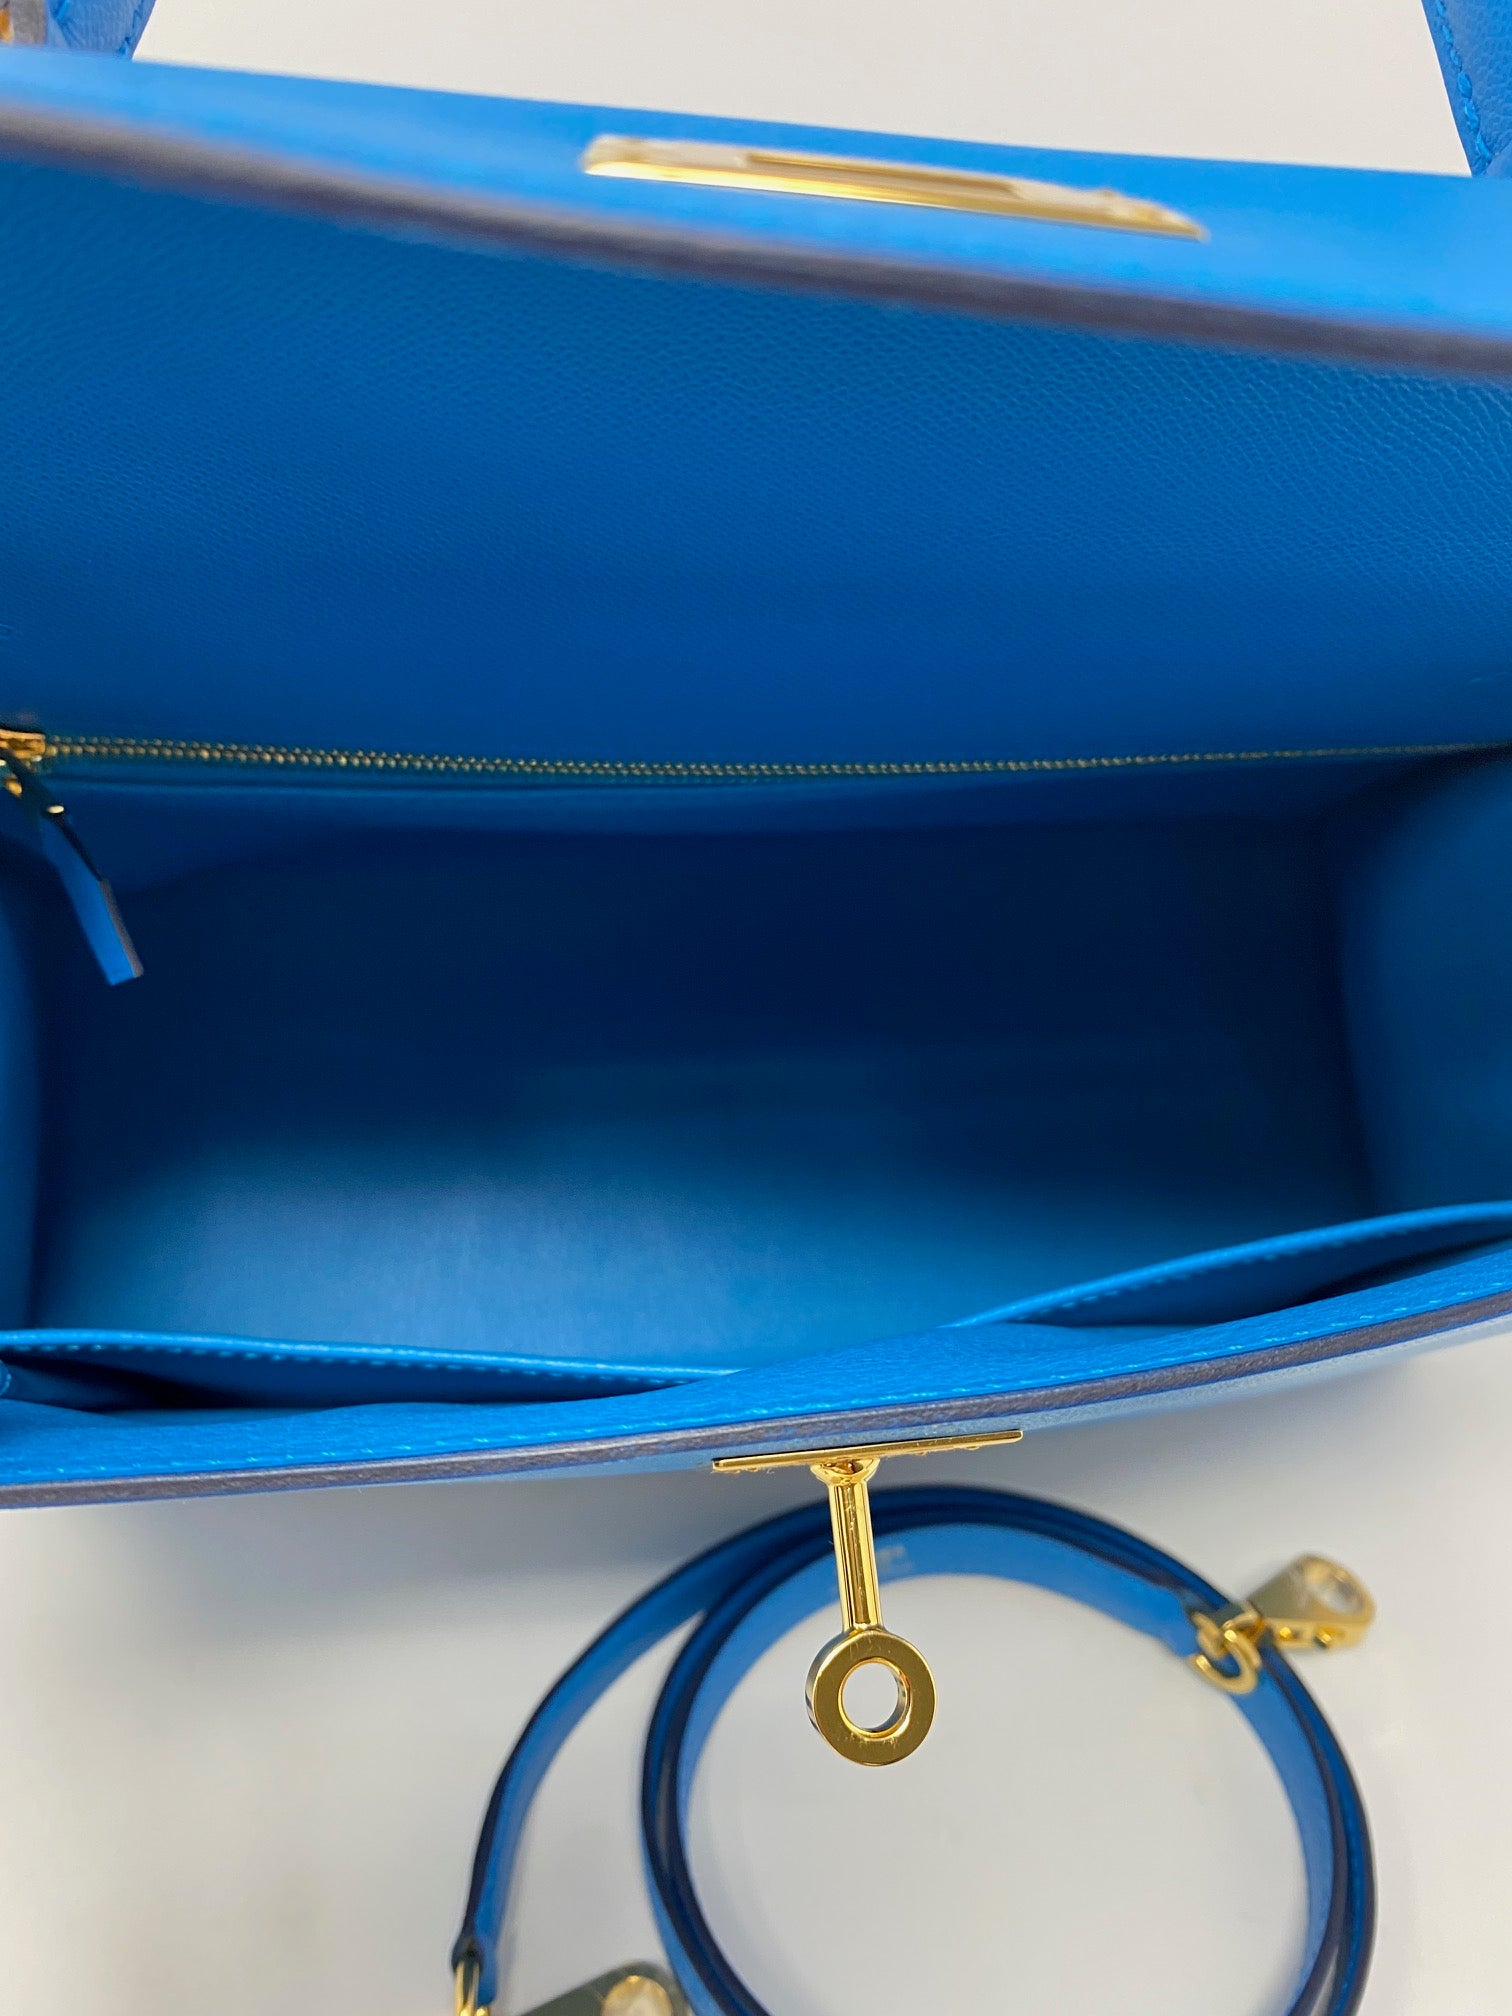 Hermes kelly 28 bag in frida blue, 2021